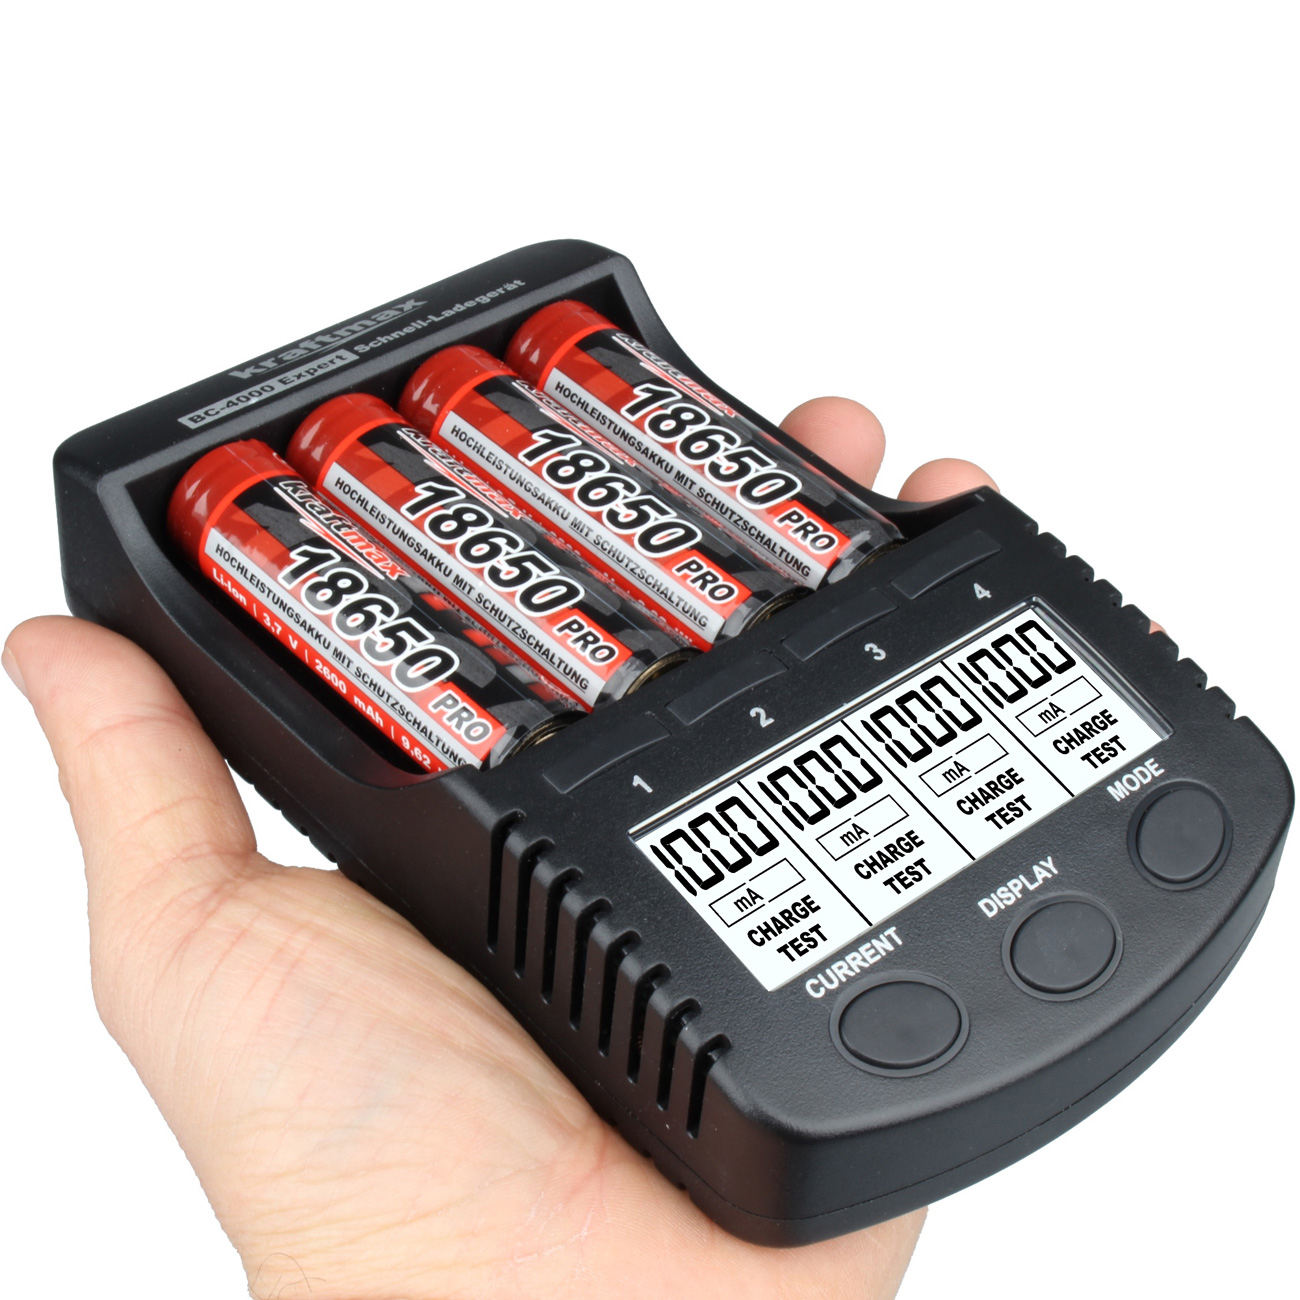 Powerbank Starthilfe - wir testen das Autobatterie Ladegerät